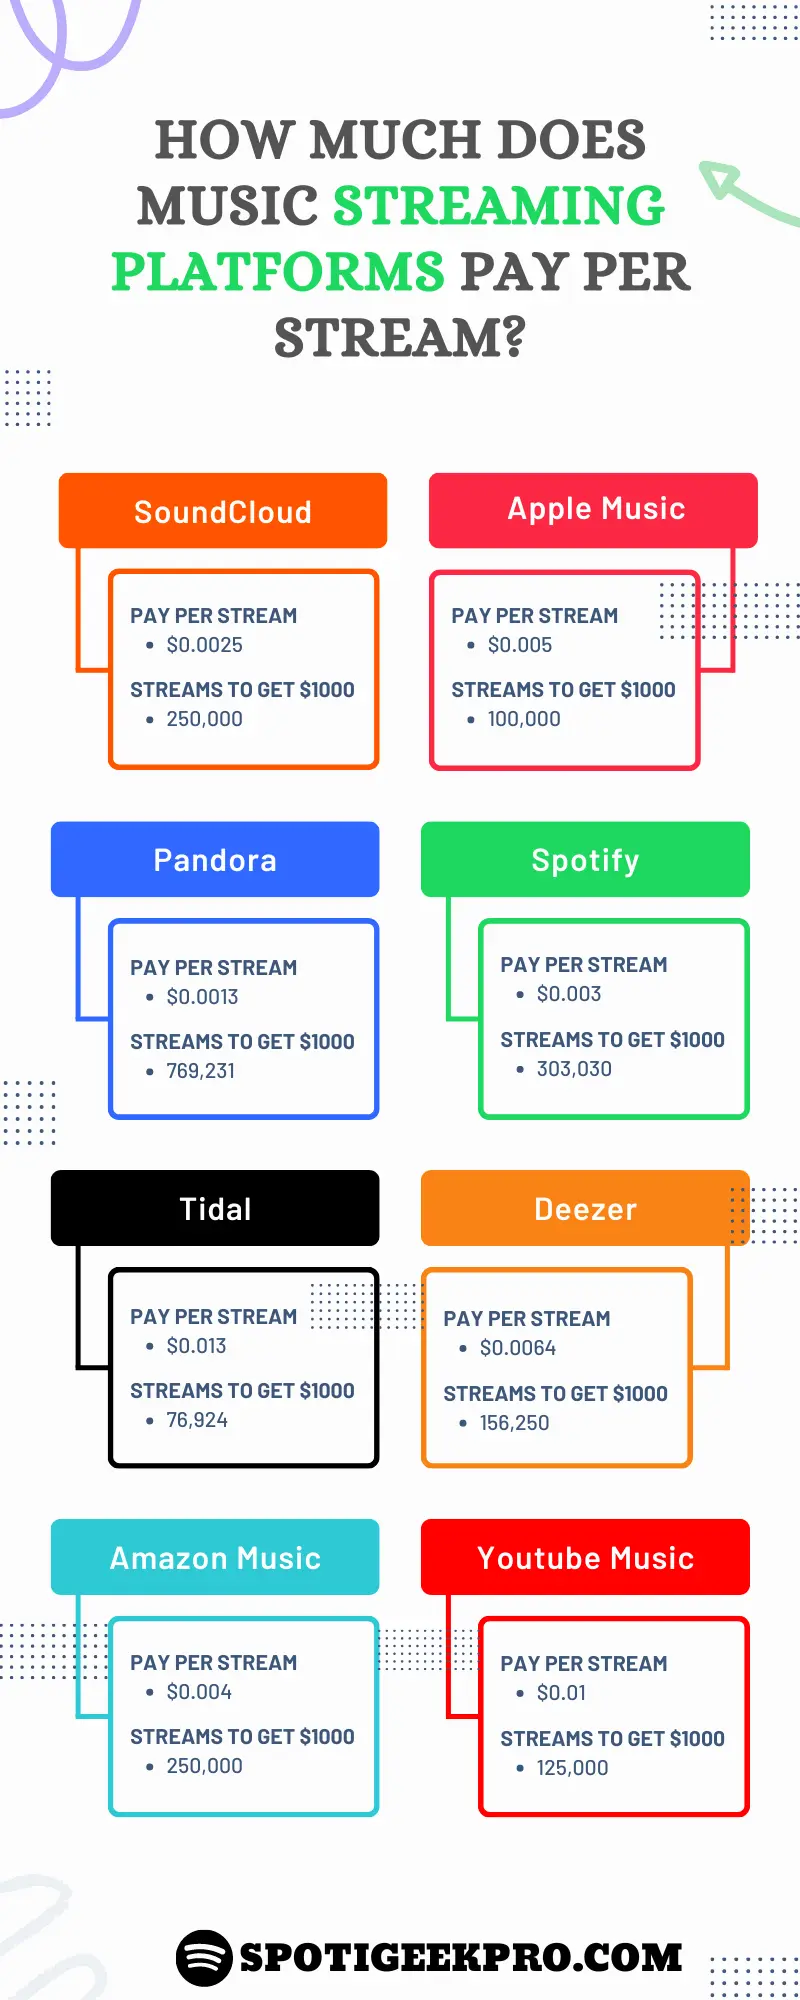 ¿Cuánto pagará Spotify por streaming?